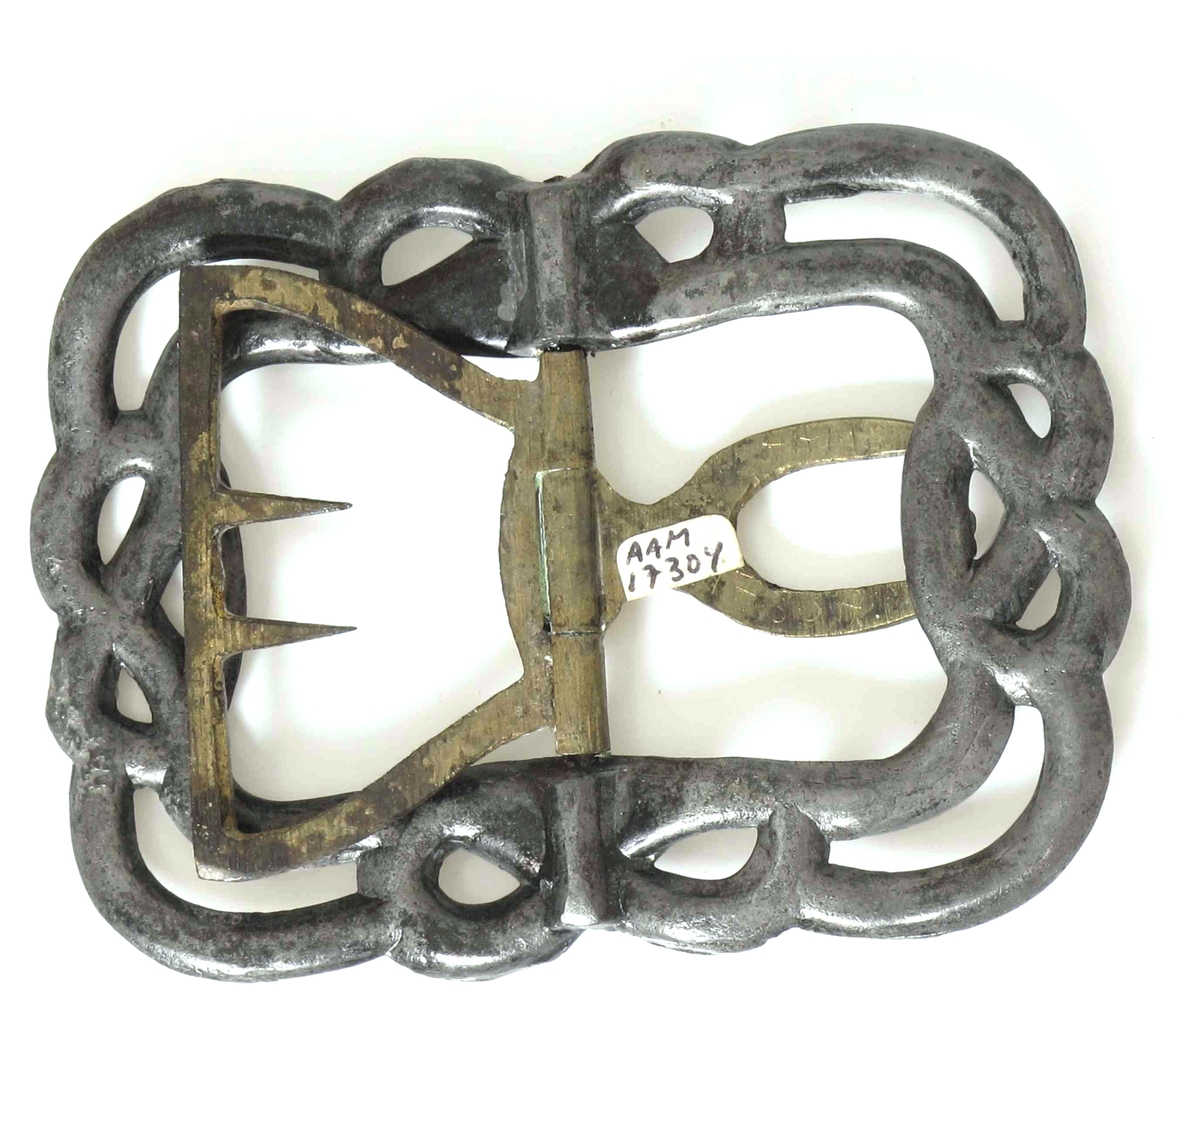 Skospenne, i stål, med hekte av messing. Formet som 2 slyngende bånd  med opphøyde knopper  i kringleform midt på hver side.  

Fra  mannssko, svart,